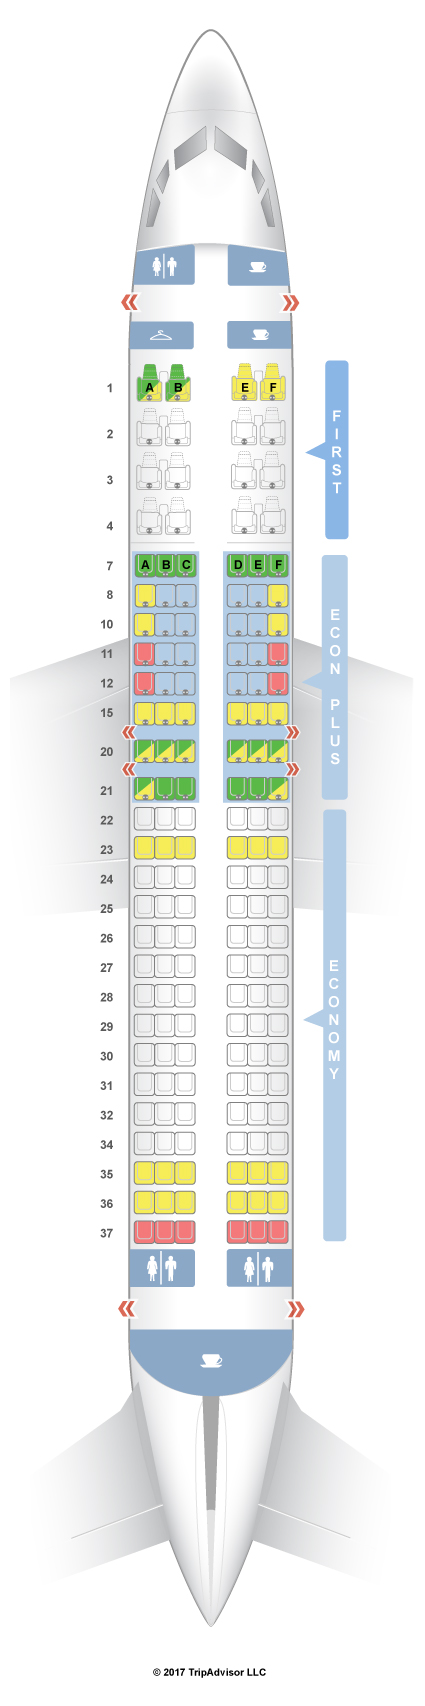 Aircraft 737 800 Seating Chart